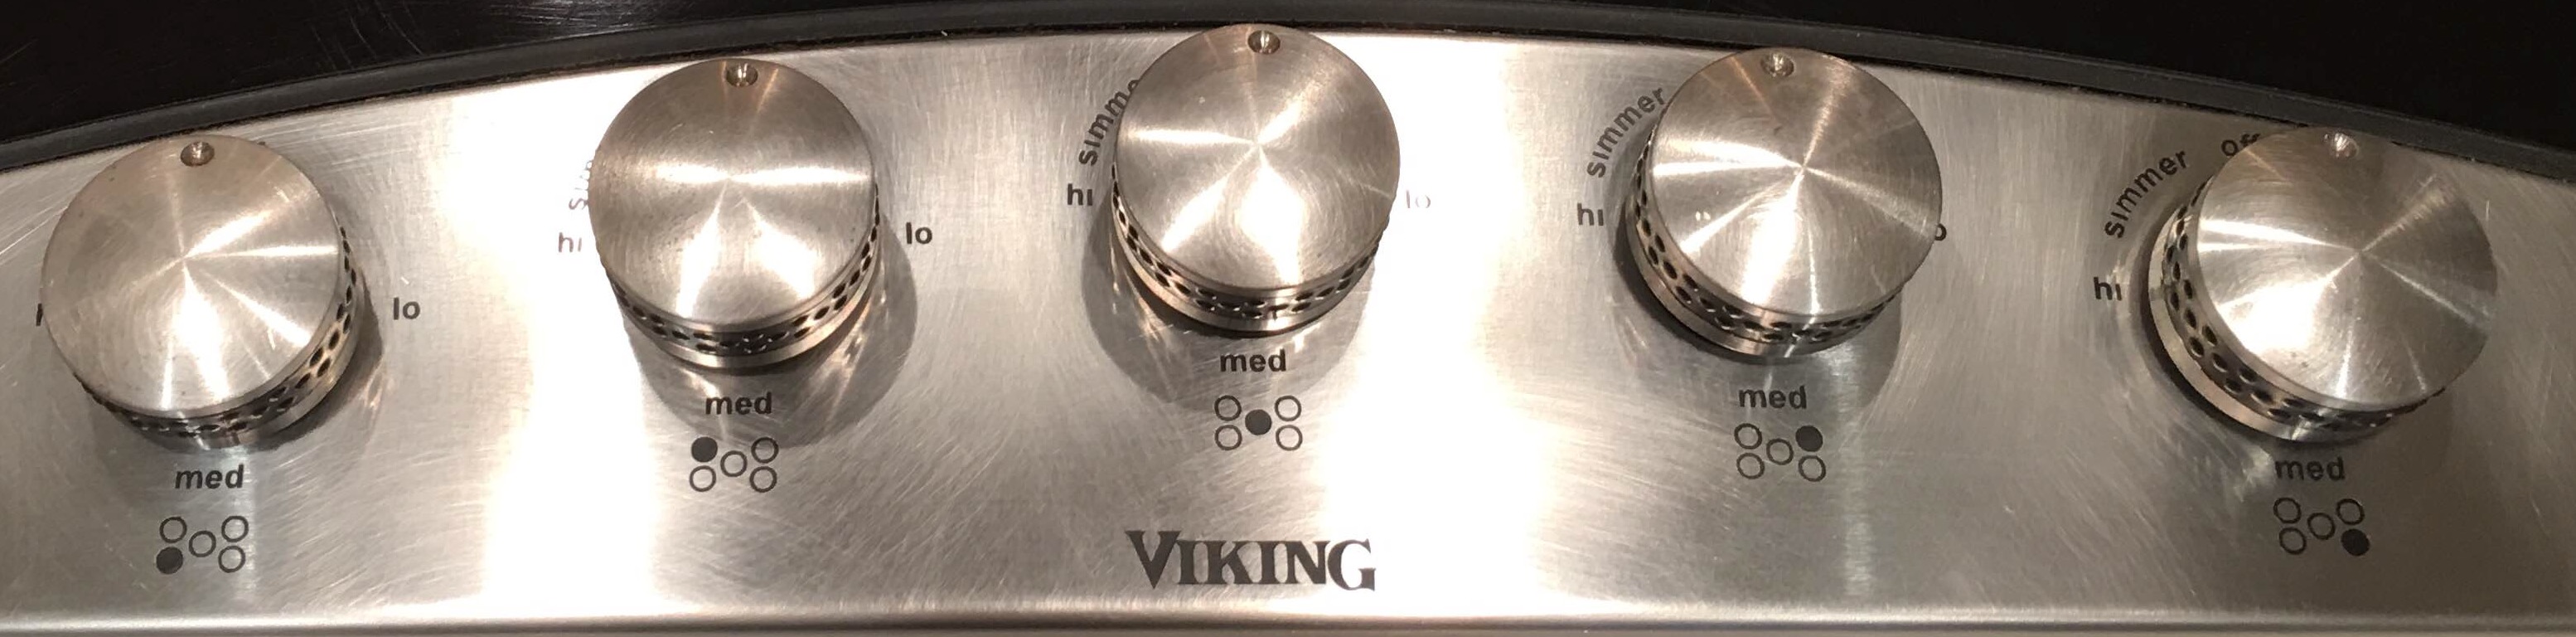 viking decu viking dgsu 1605